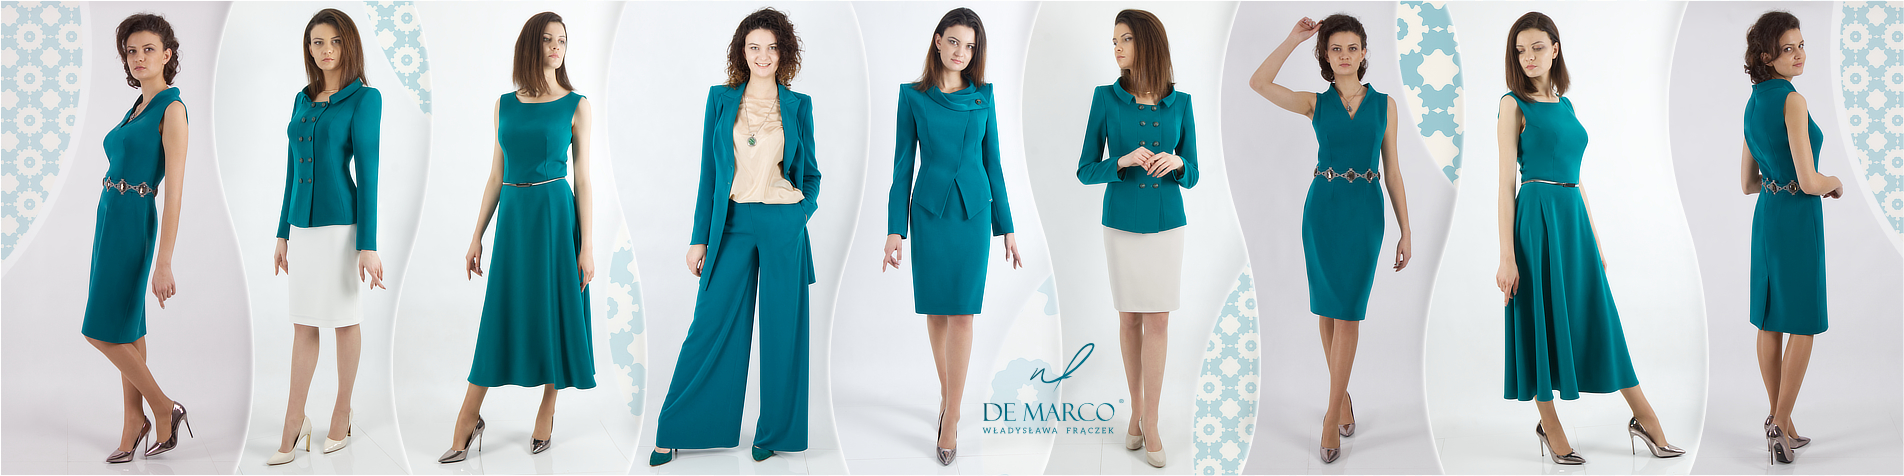 Eleganckie stylizacje biznesowe i dyplomatyczne dla kobiet. Szycie na miarę De Marco. Garsonki, kostiumy i garnitury damskie w zielonym modnym kolorze